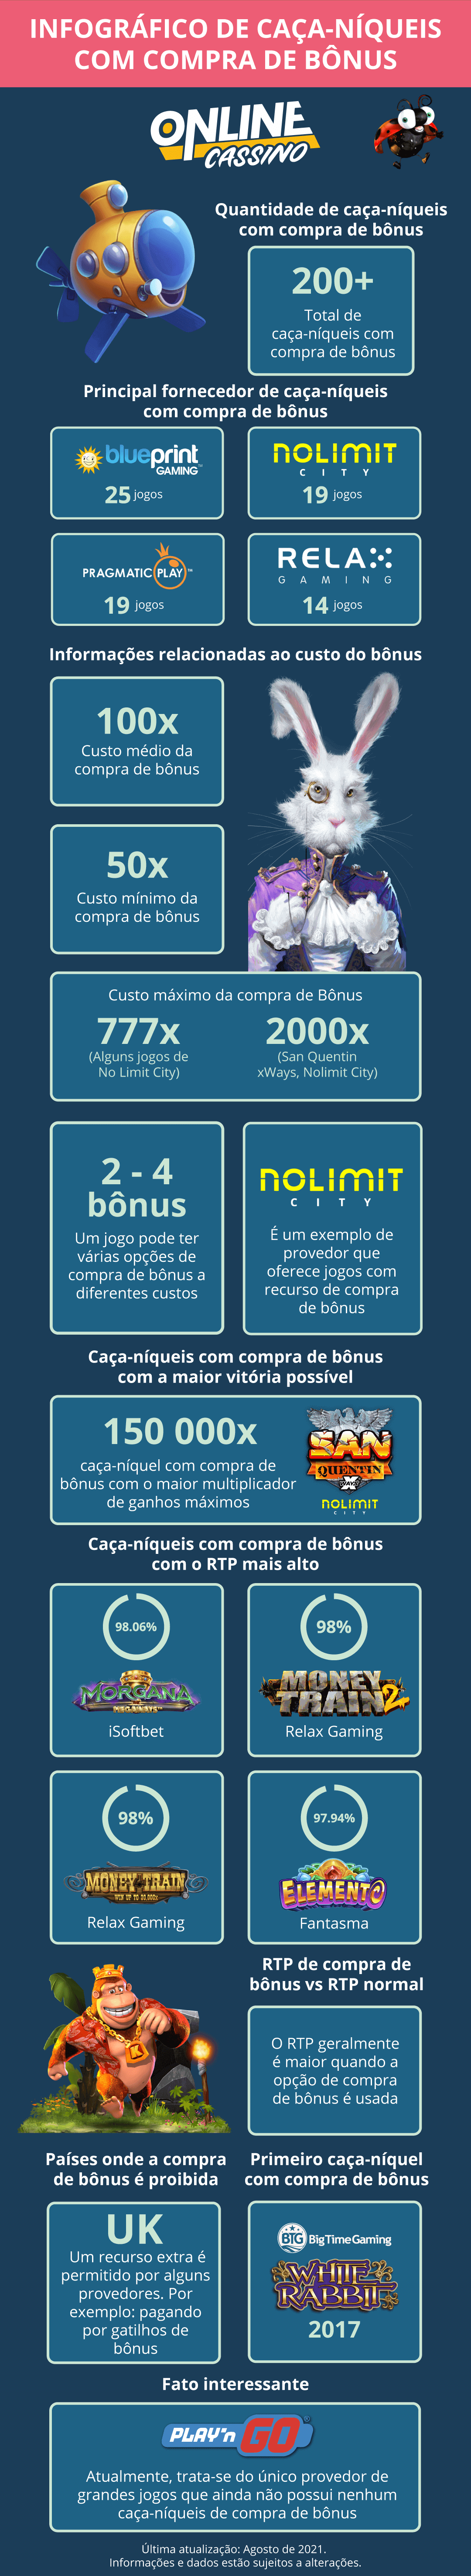 INFOGRÁFICO DE CAÇA-NÍQUEIS COM COMPRA DE BÔNUS